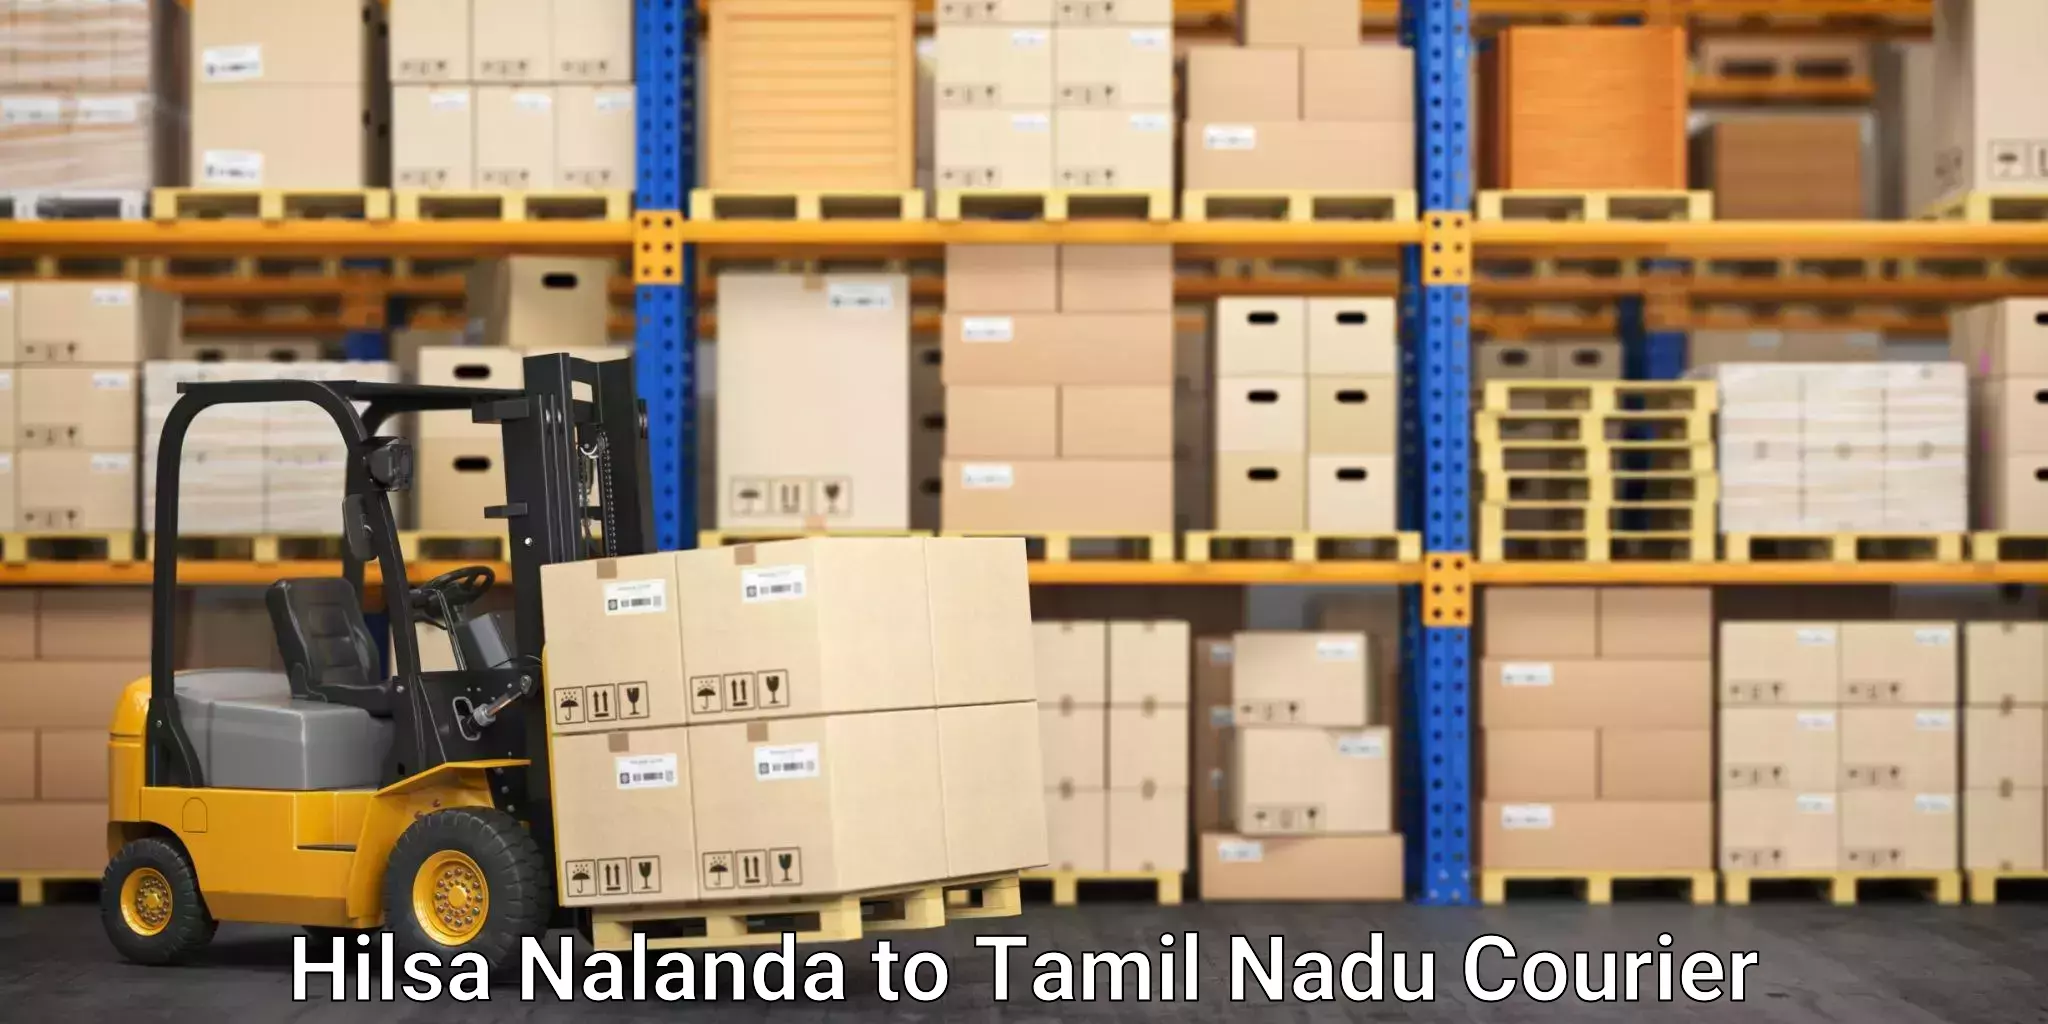 Efficient moving company Hilsa Nalanda to Gudiyattam